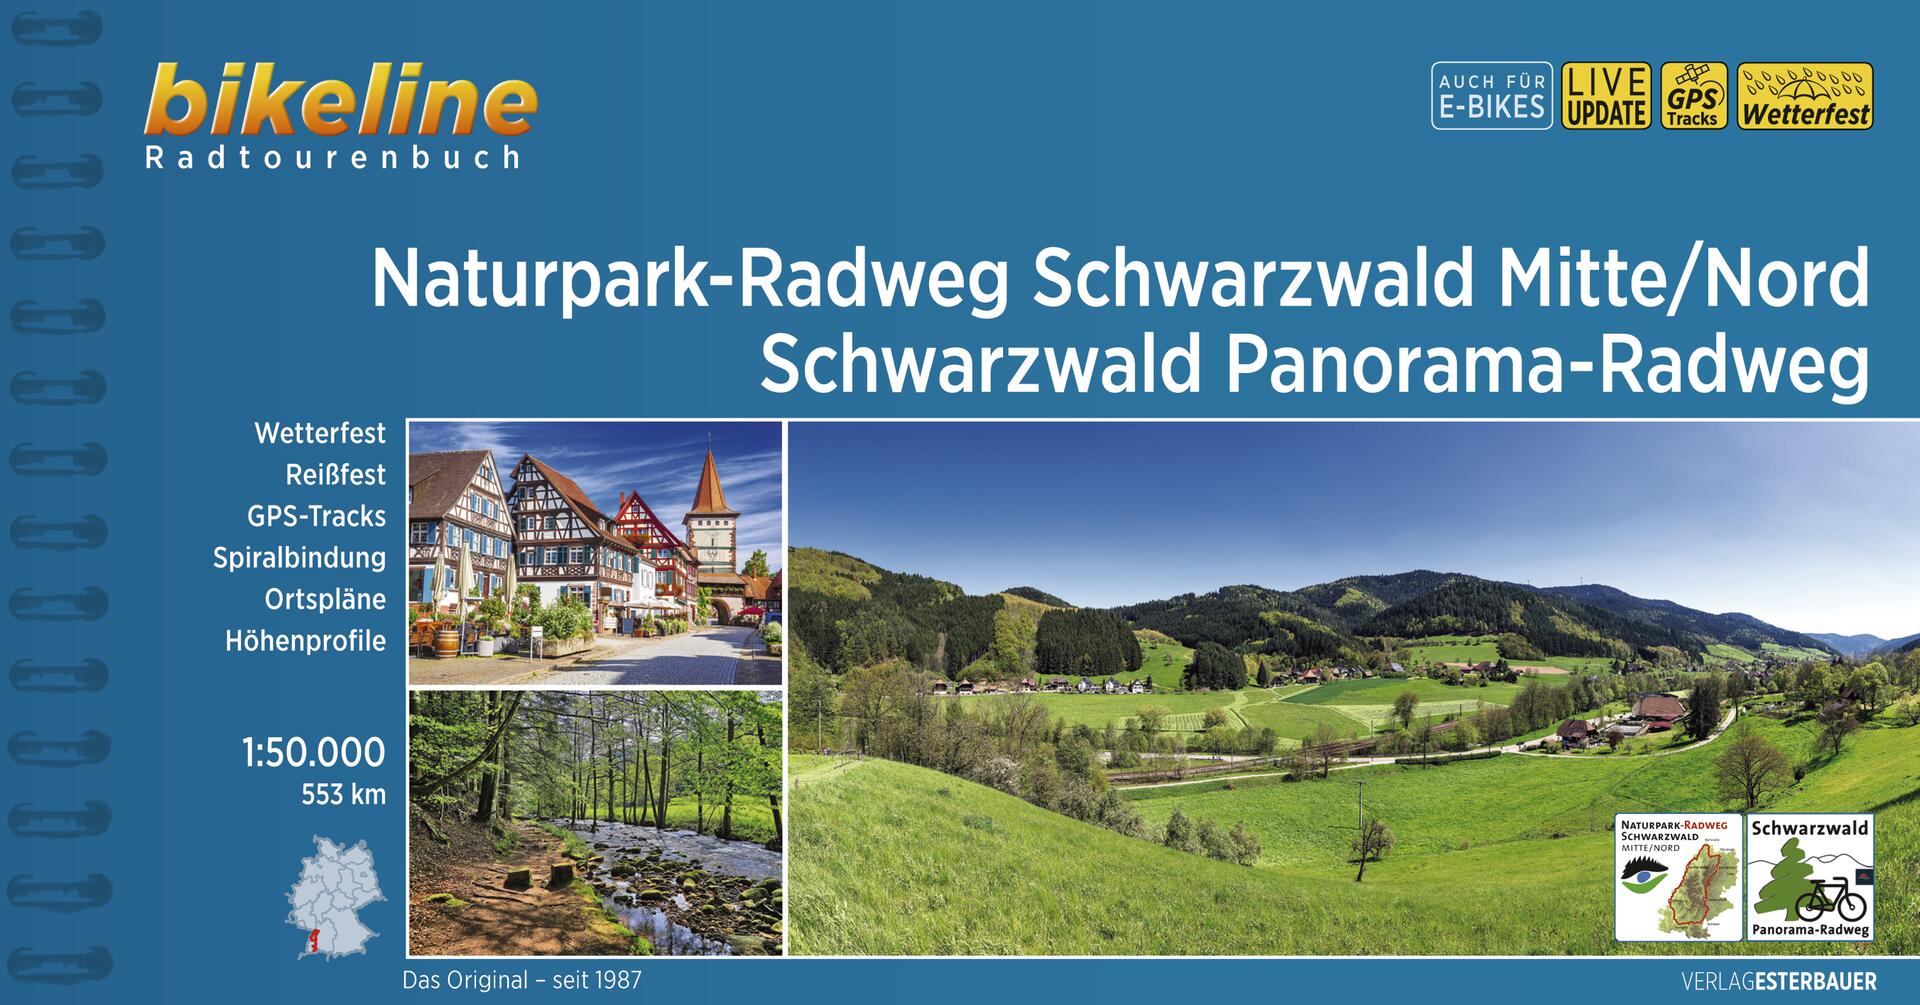 Online bestellen: Fietsgids Bikeline Naturpark-Radweg Schwarzwald Mitte - Nord | Esterbauer